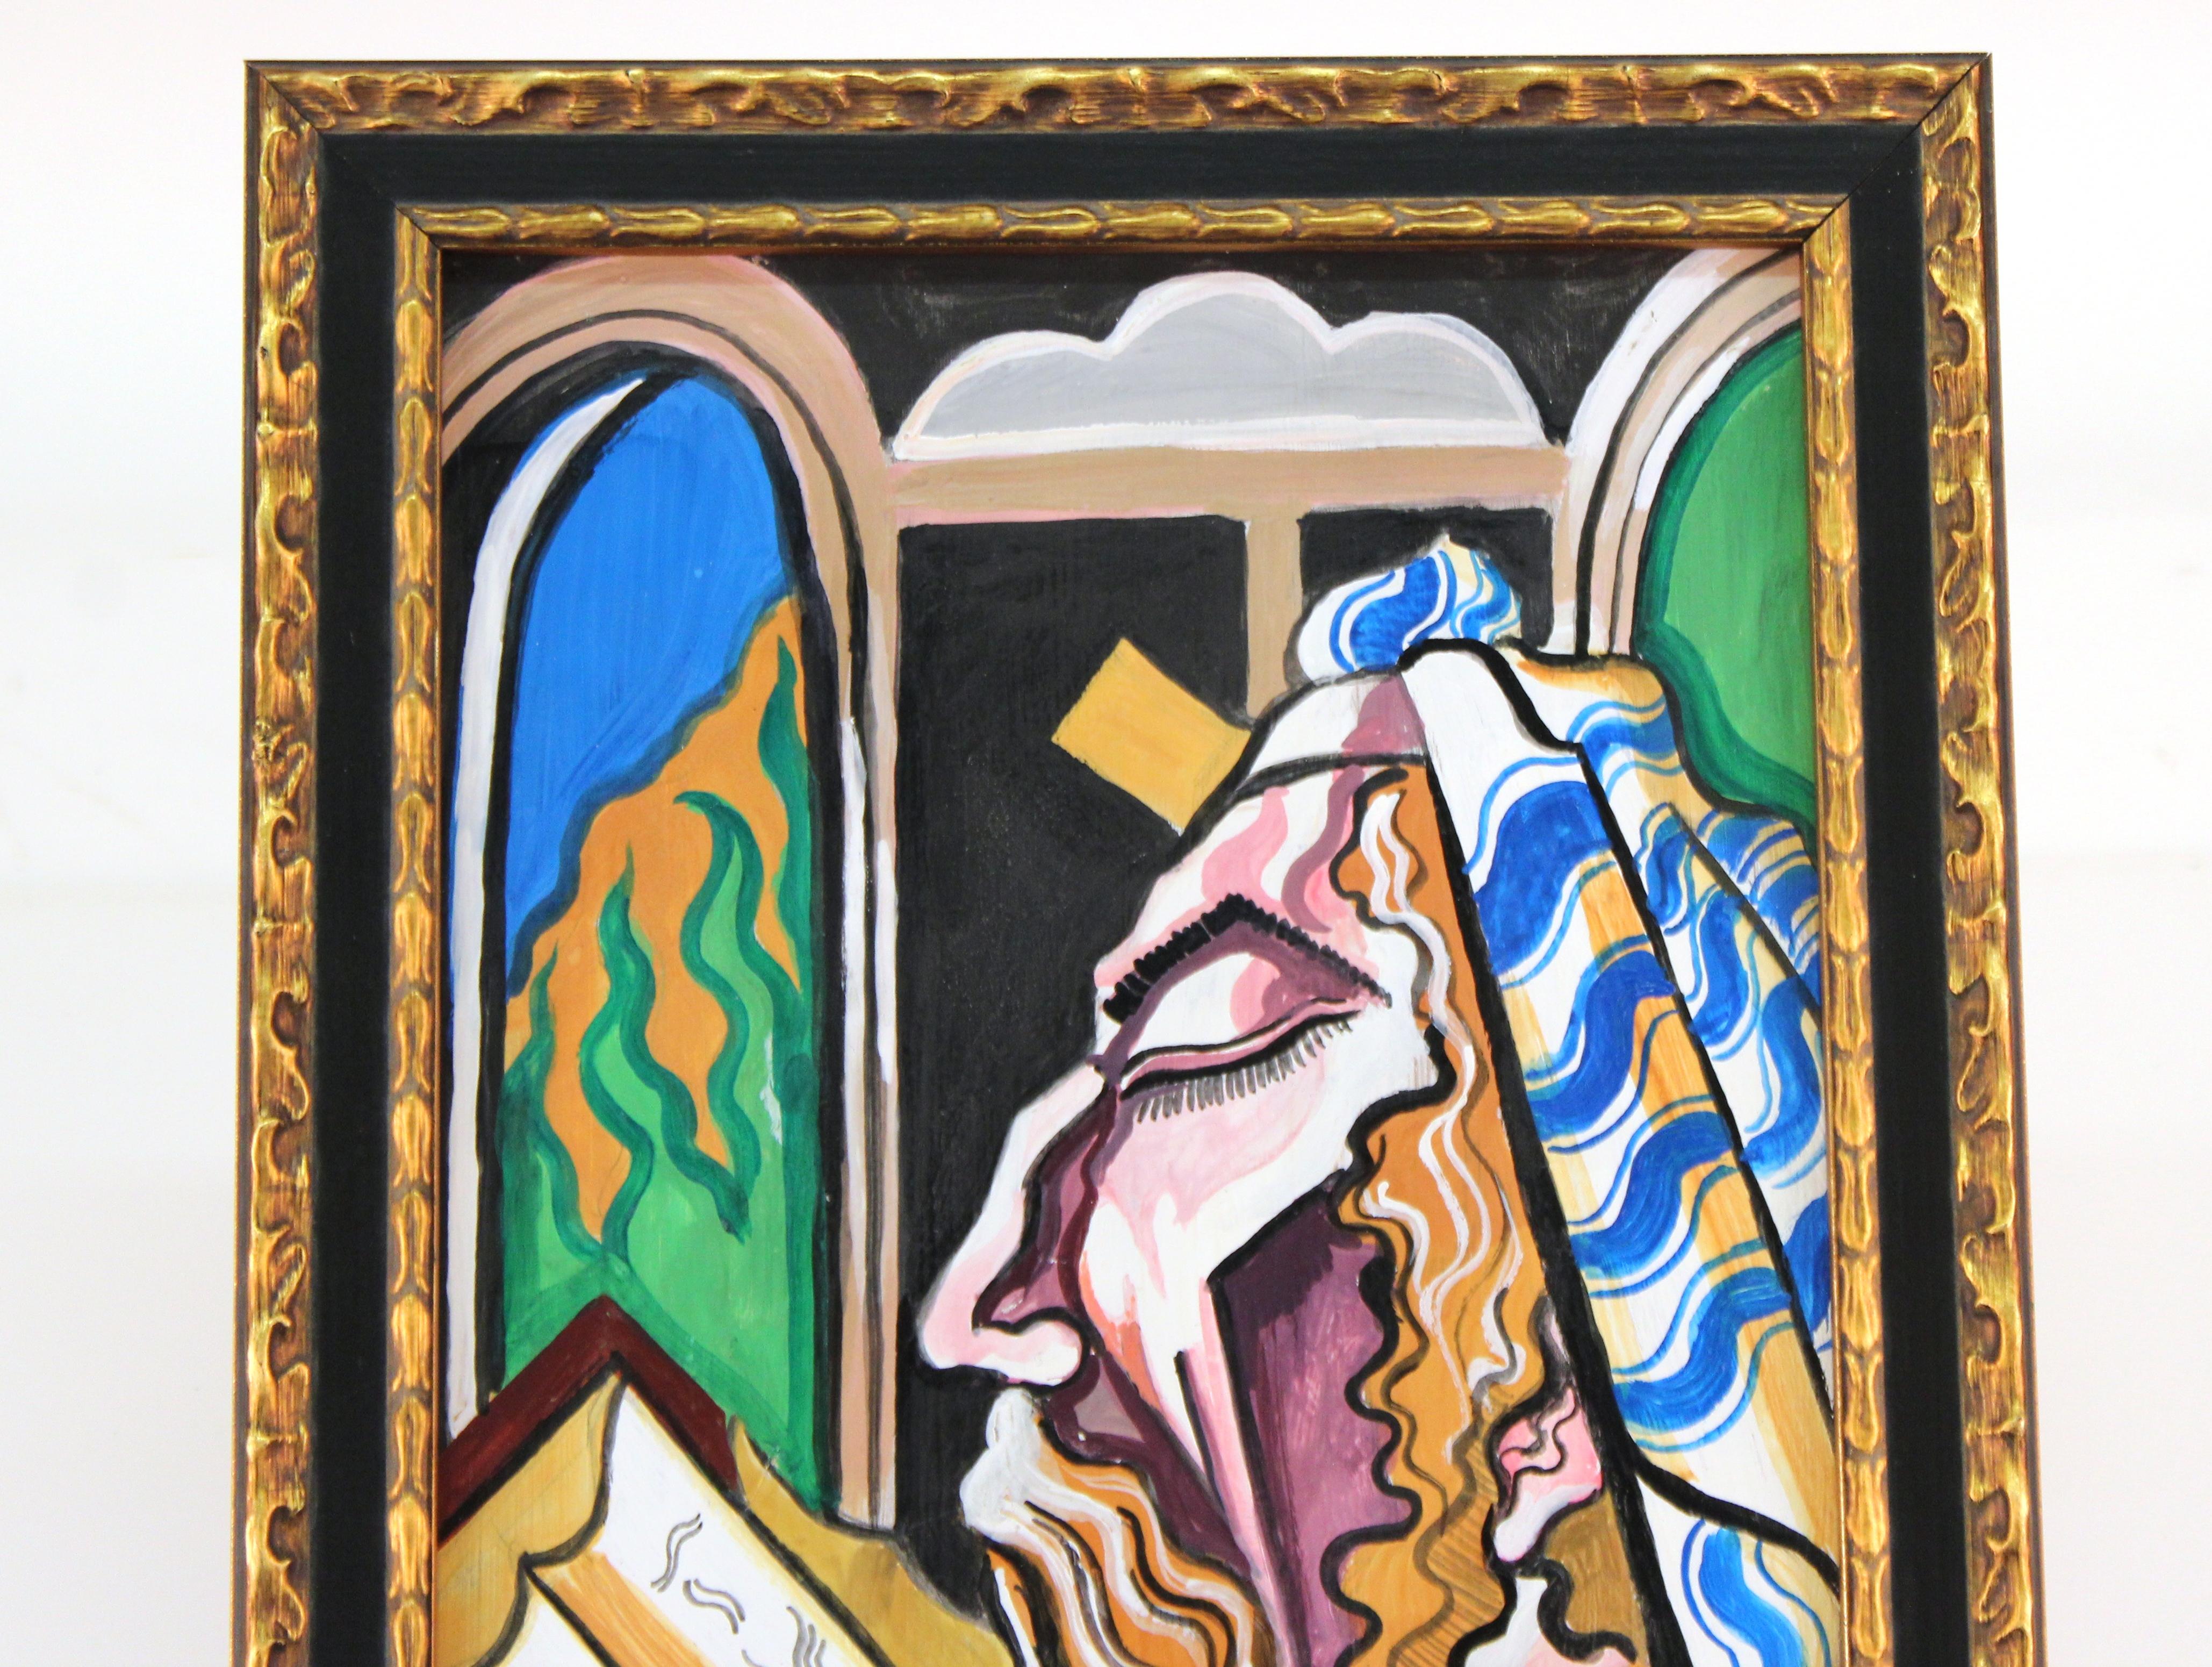 Ungarischer Modernist rabbinische Judaica Expressionist Öl und Tempera Porträtmalerei, zugeschrieben Hugo Scheiber. Scheiber, geboren am 29. September 1873 in Budapest, gestorben am 7. März 1950, war ein ungarischer Maler der Moderne und des